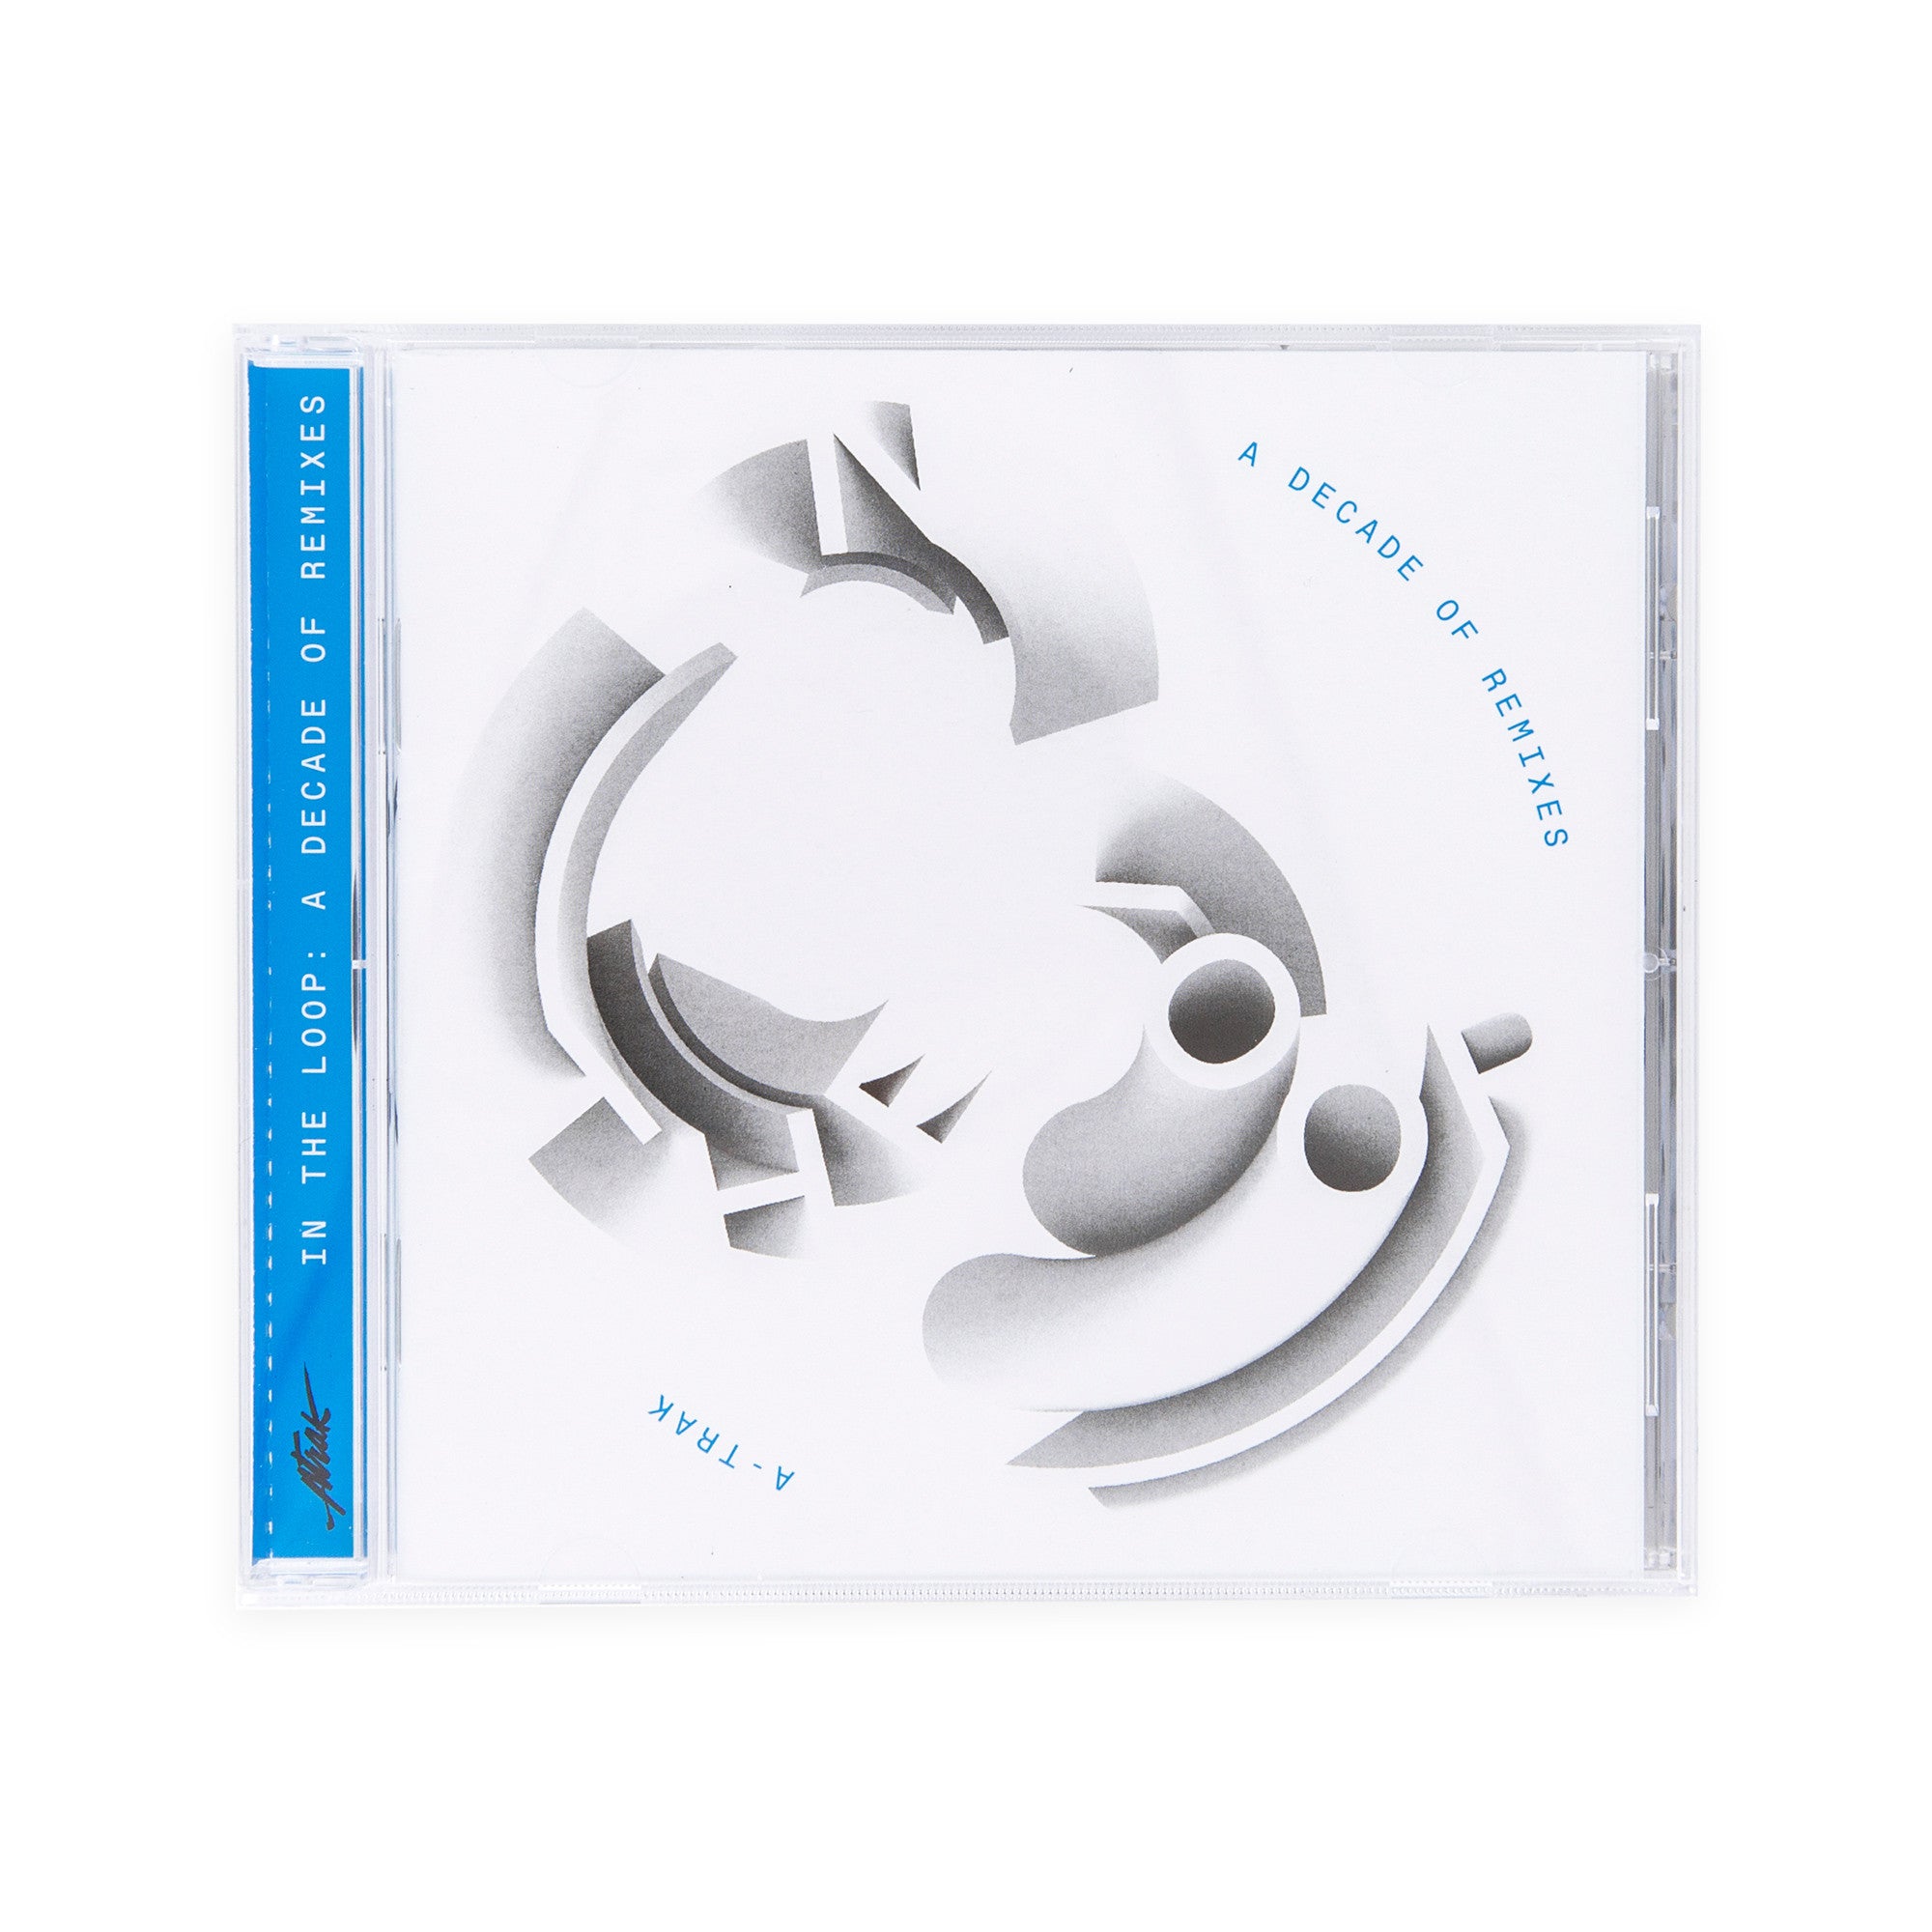 A-Trak “In The Loop: A Decade Of Remixes” CD